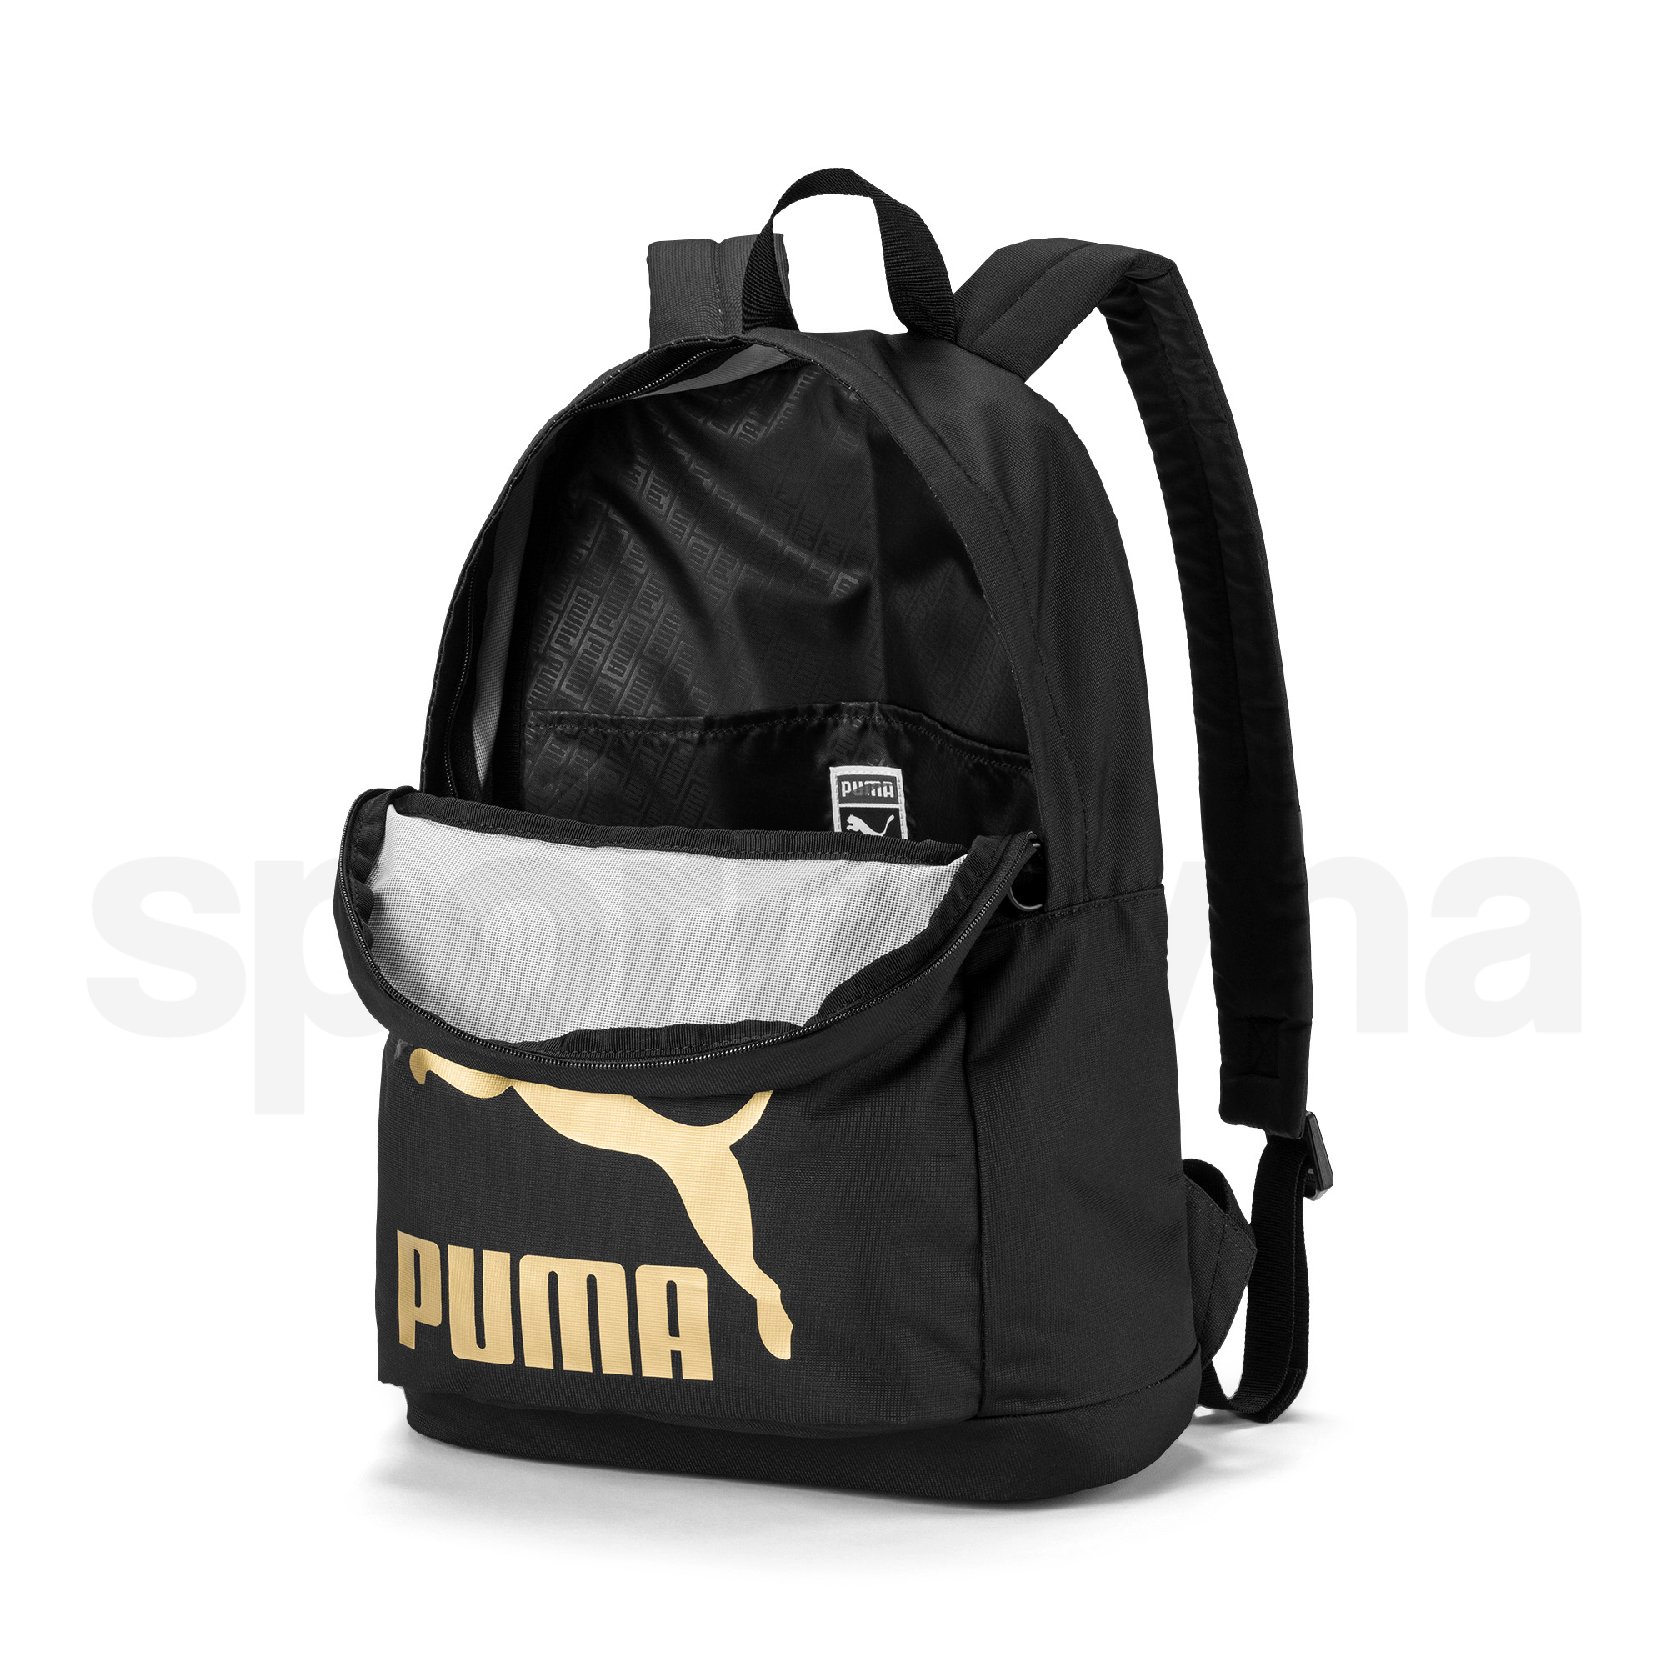 Batoh Puma Originals Backpack - černá/zlatá